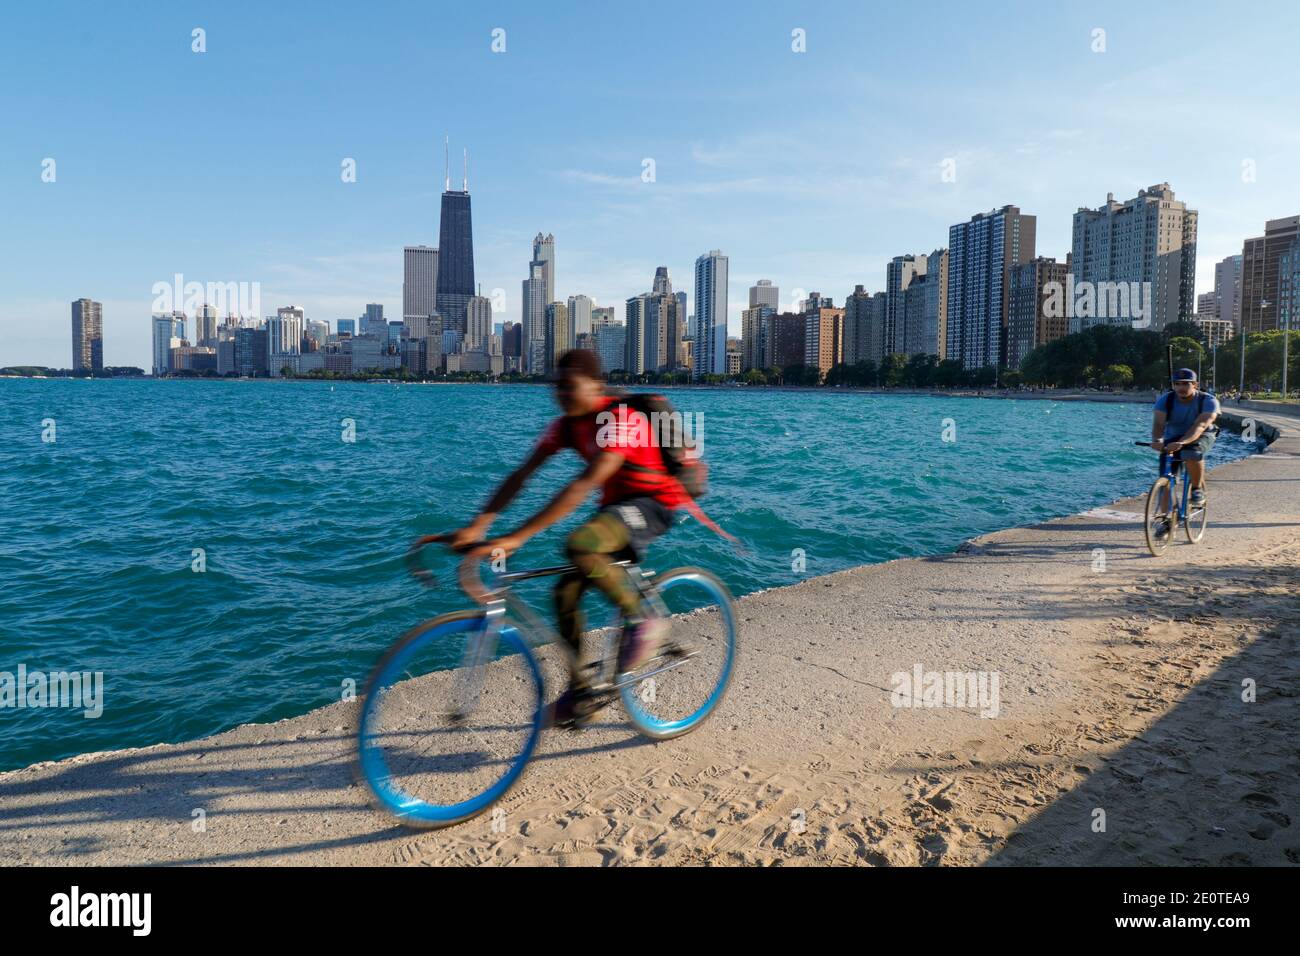 Cyclistes sur la digue près de la plage North Avenue de Chicago. Flou de mouvement. Banque D'Images